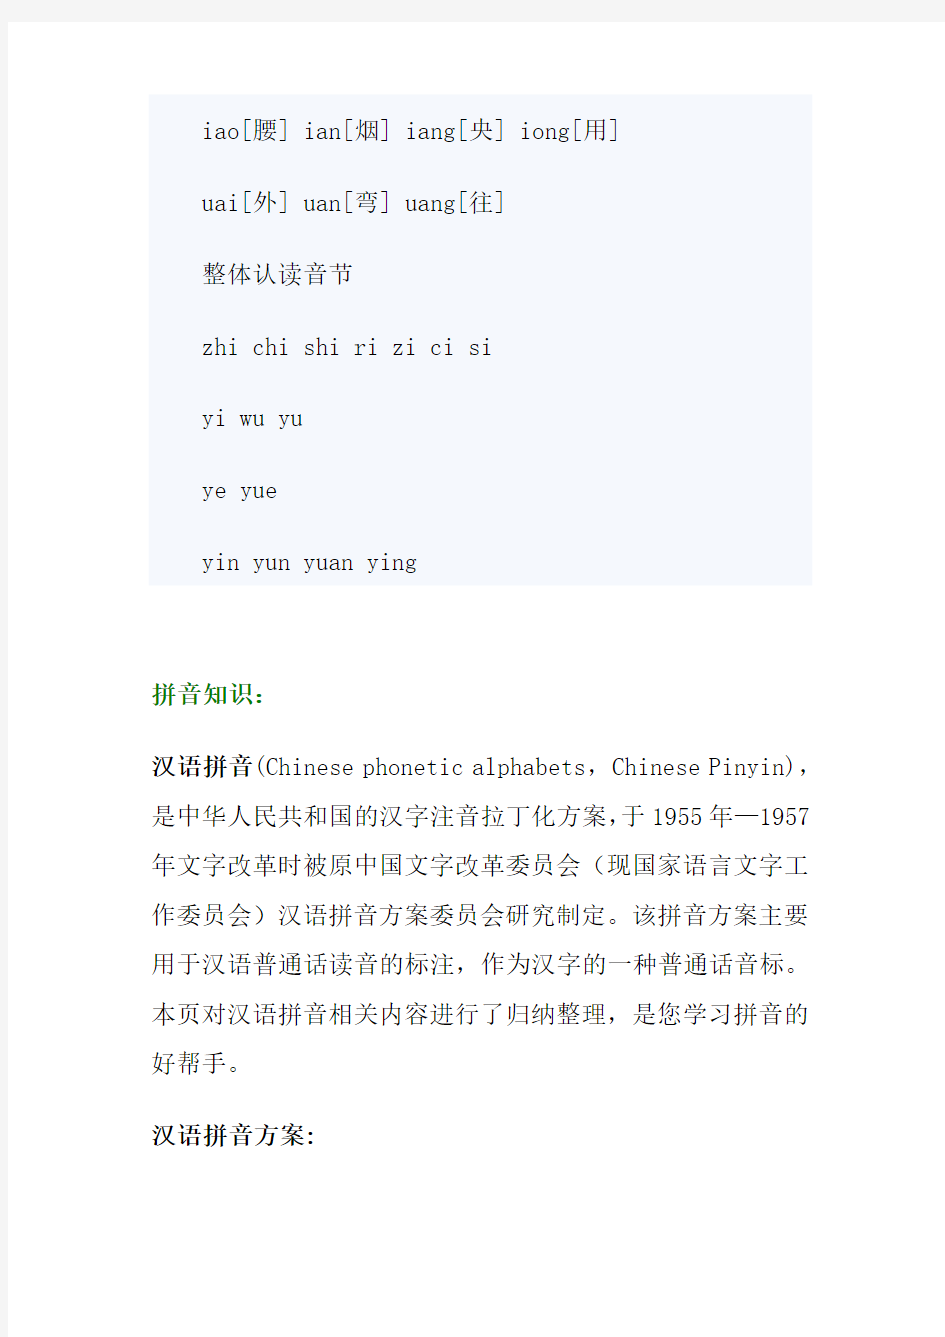 26个汉语拼音字母表的发音